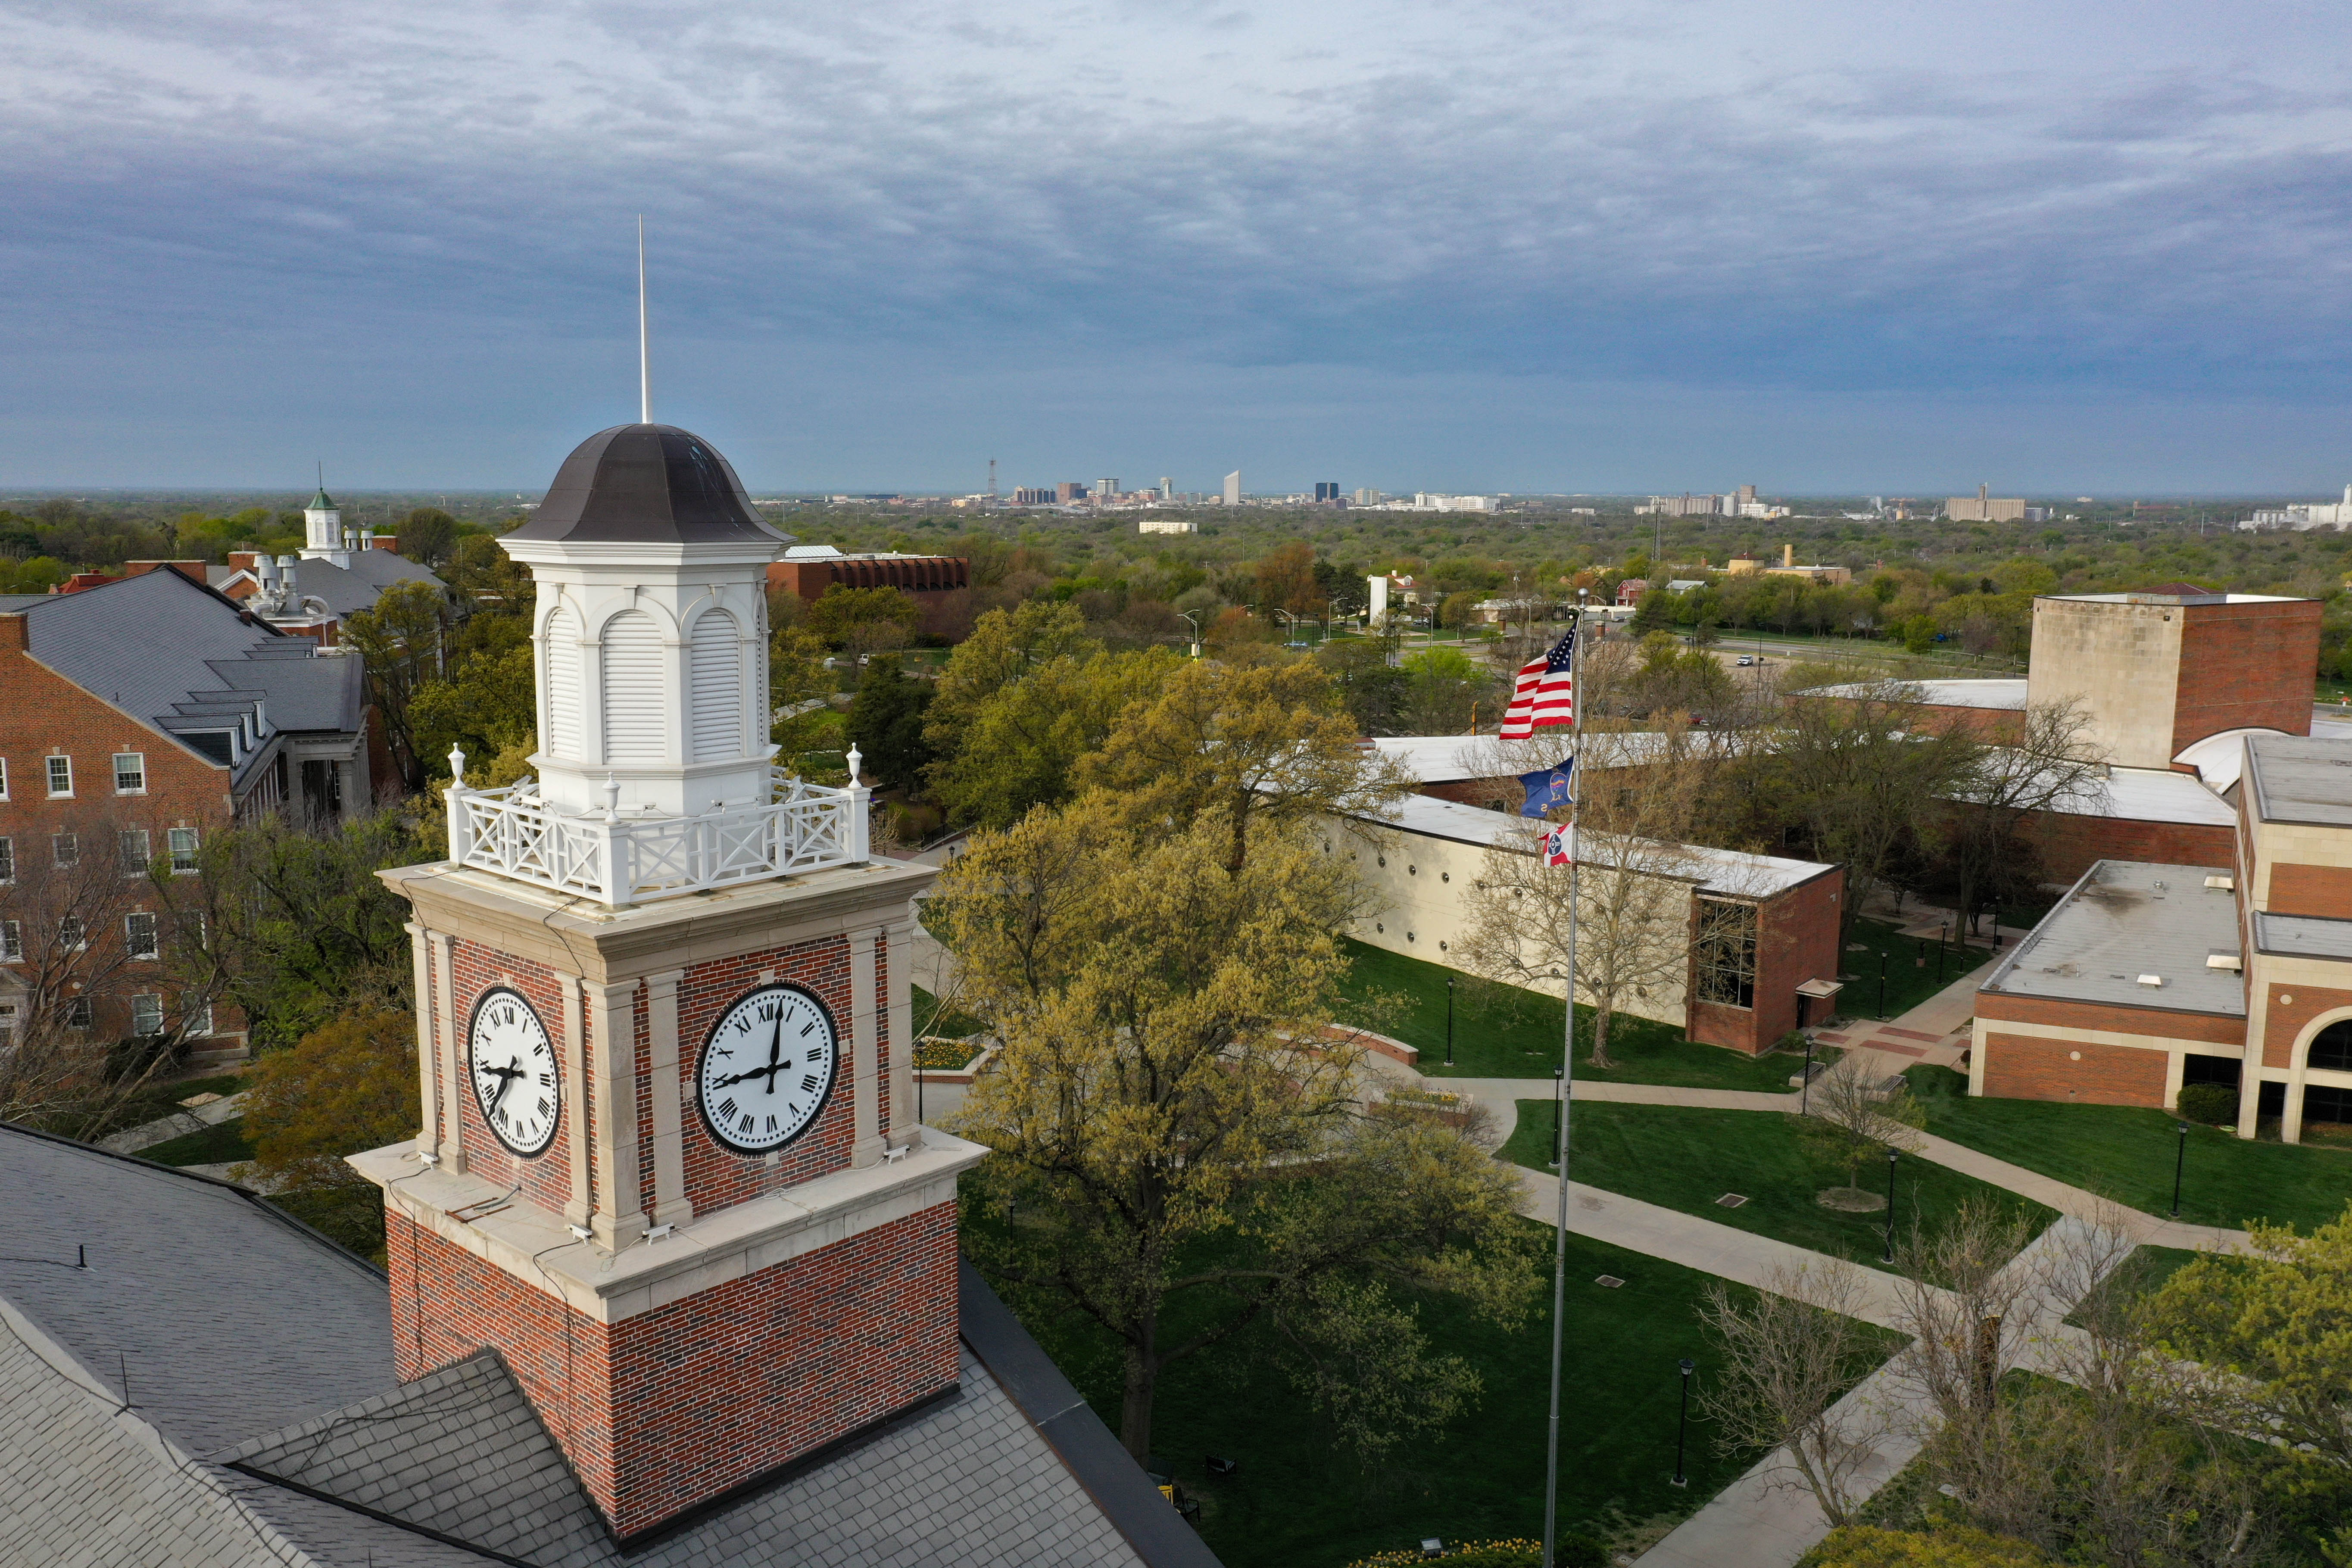 Wichita State University's clock tower